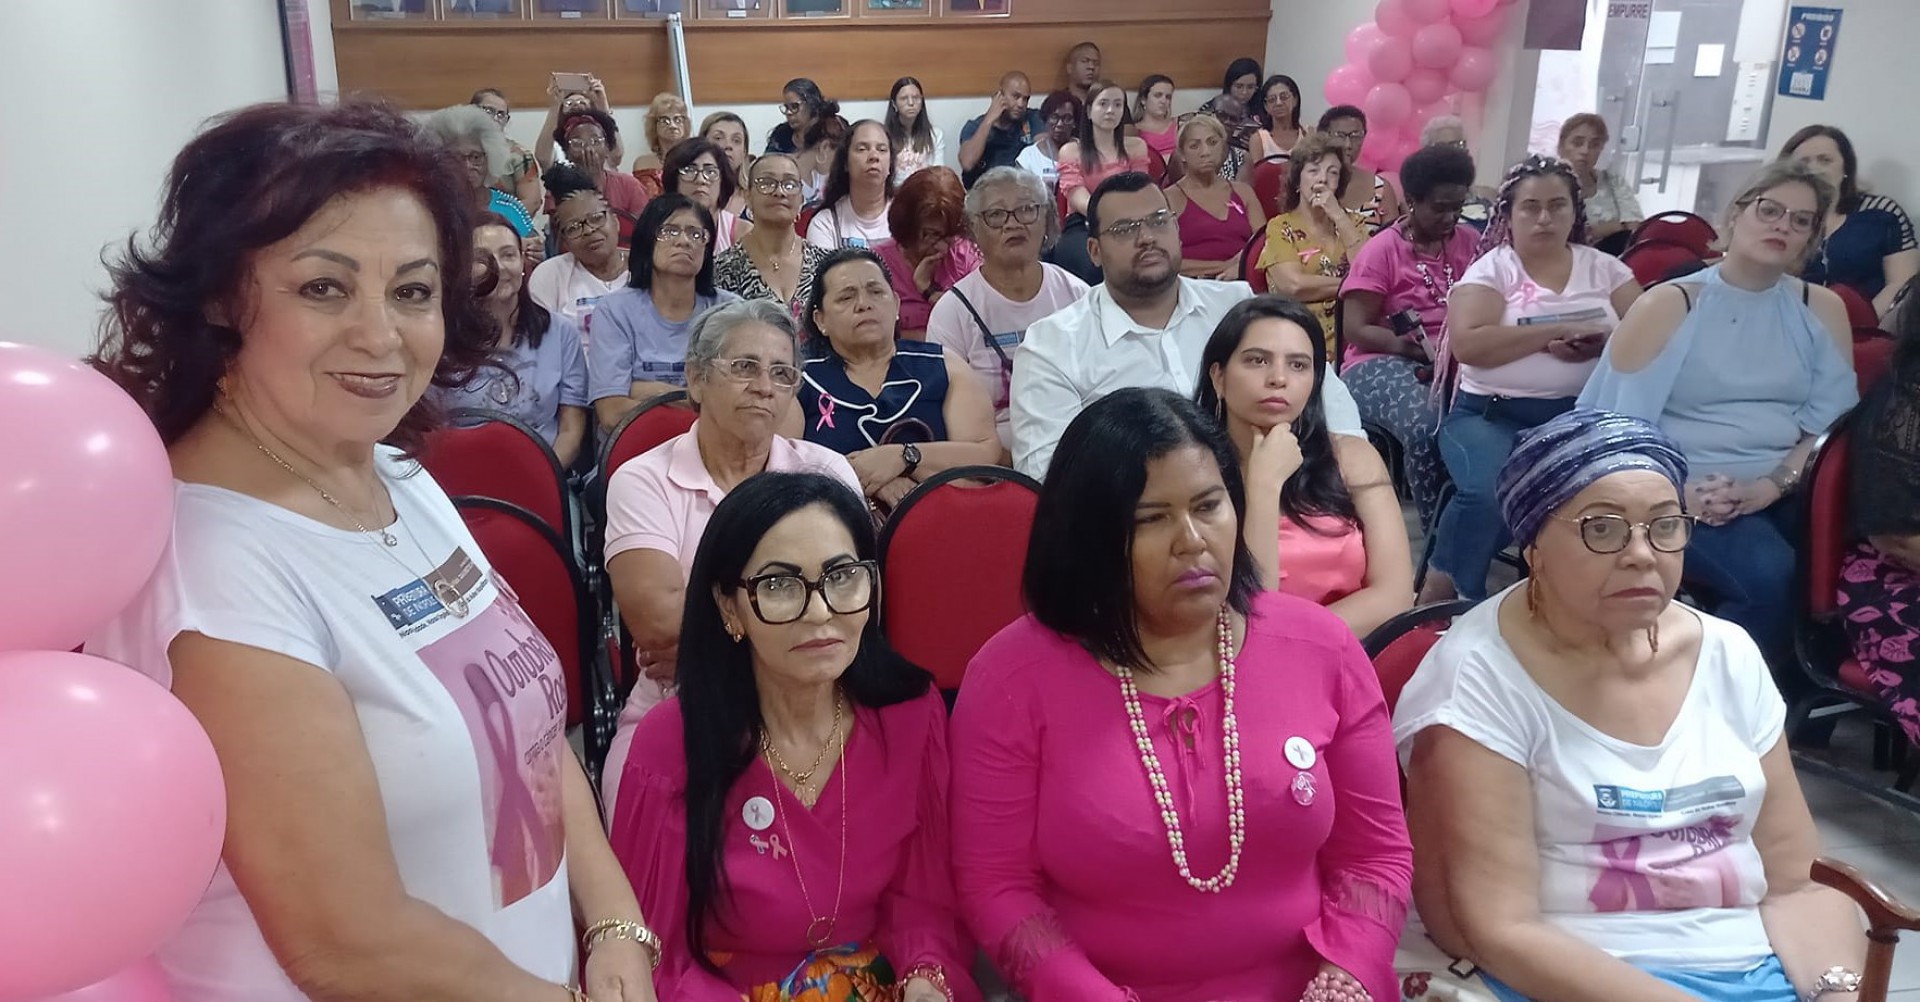 A Superintendente dos Direitos da Mulher, a professora Nilcéa Clara Cardoso (em pé) foi parceira no evento na OAB Nilópolis - Divulgação